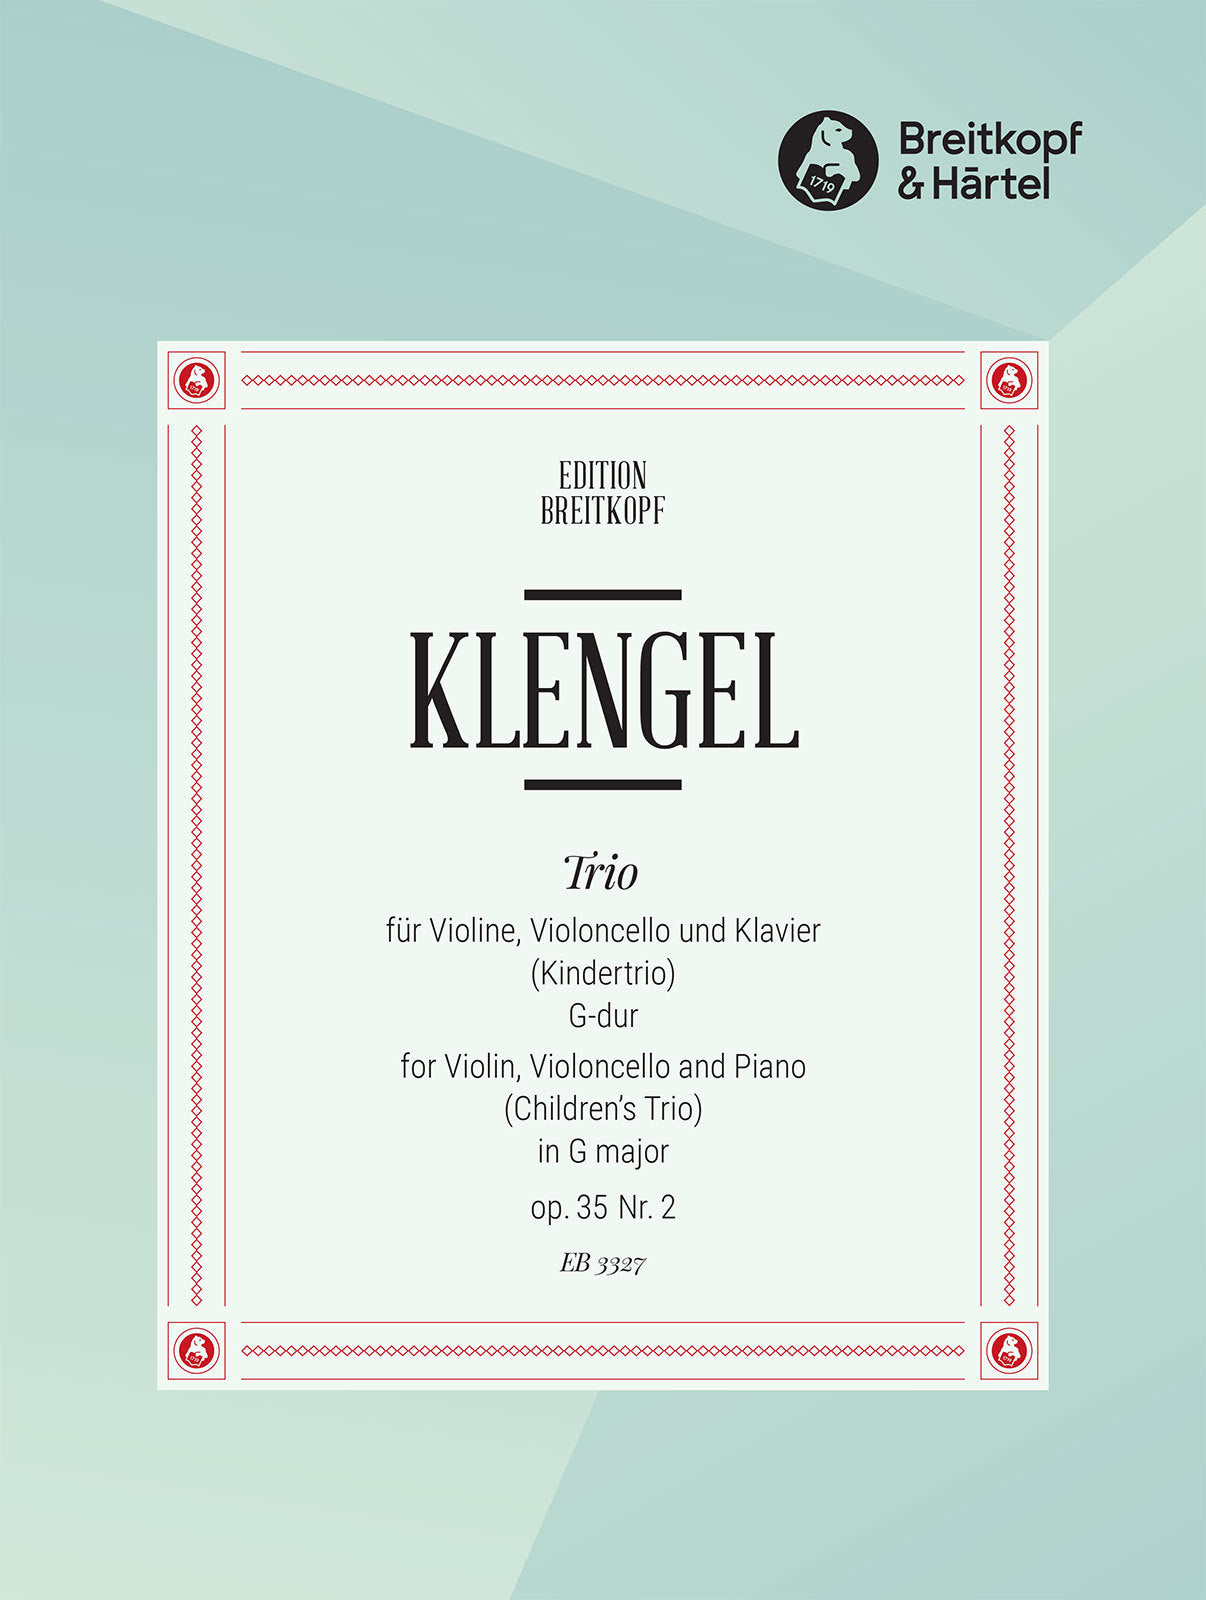 Klengel: Children's Trio in G Major, Op. 35, No. 2